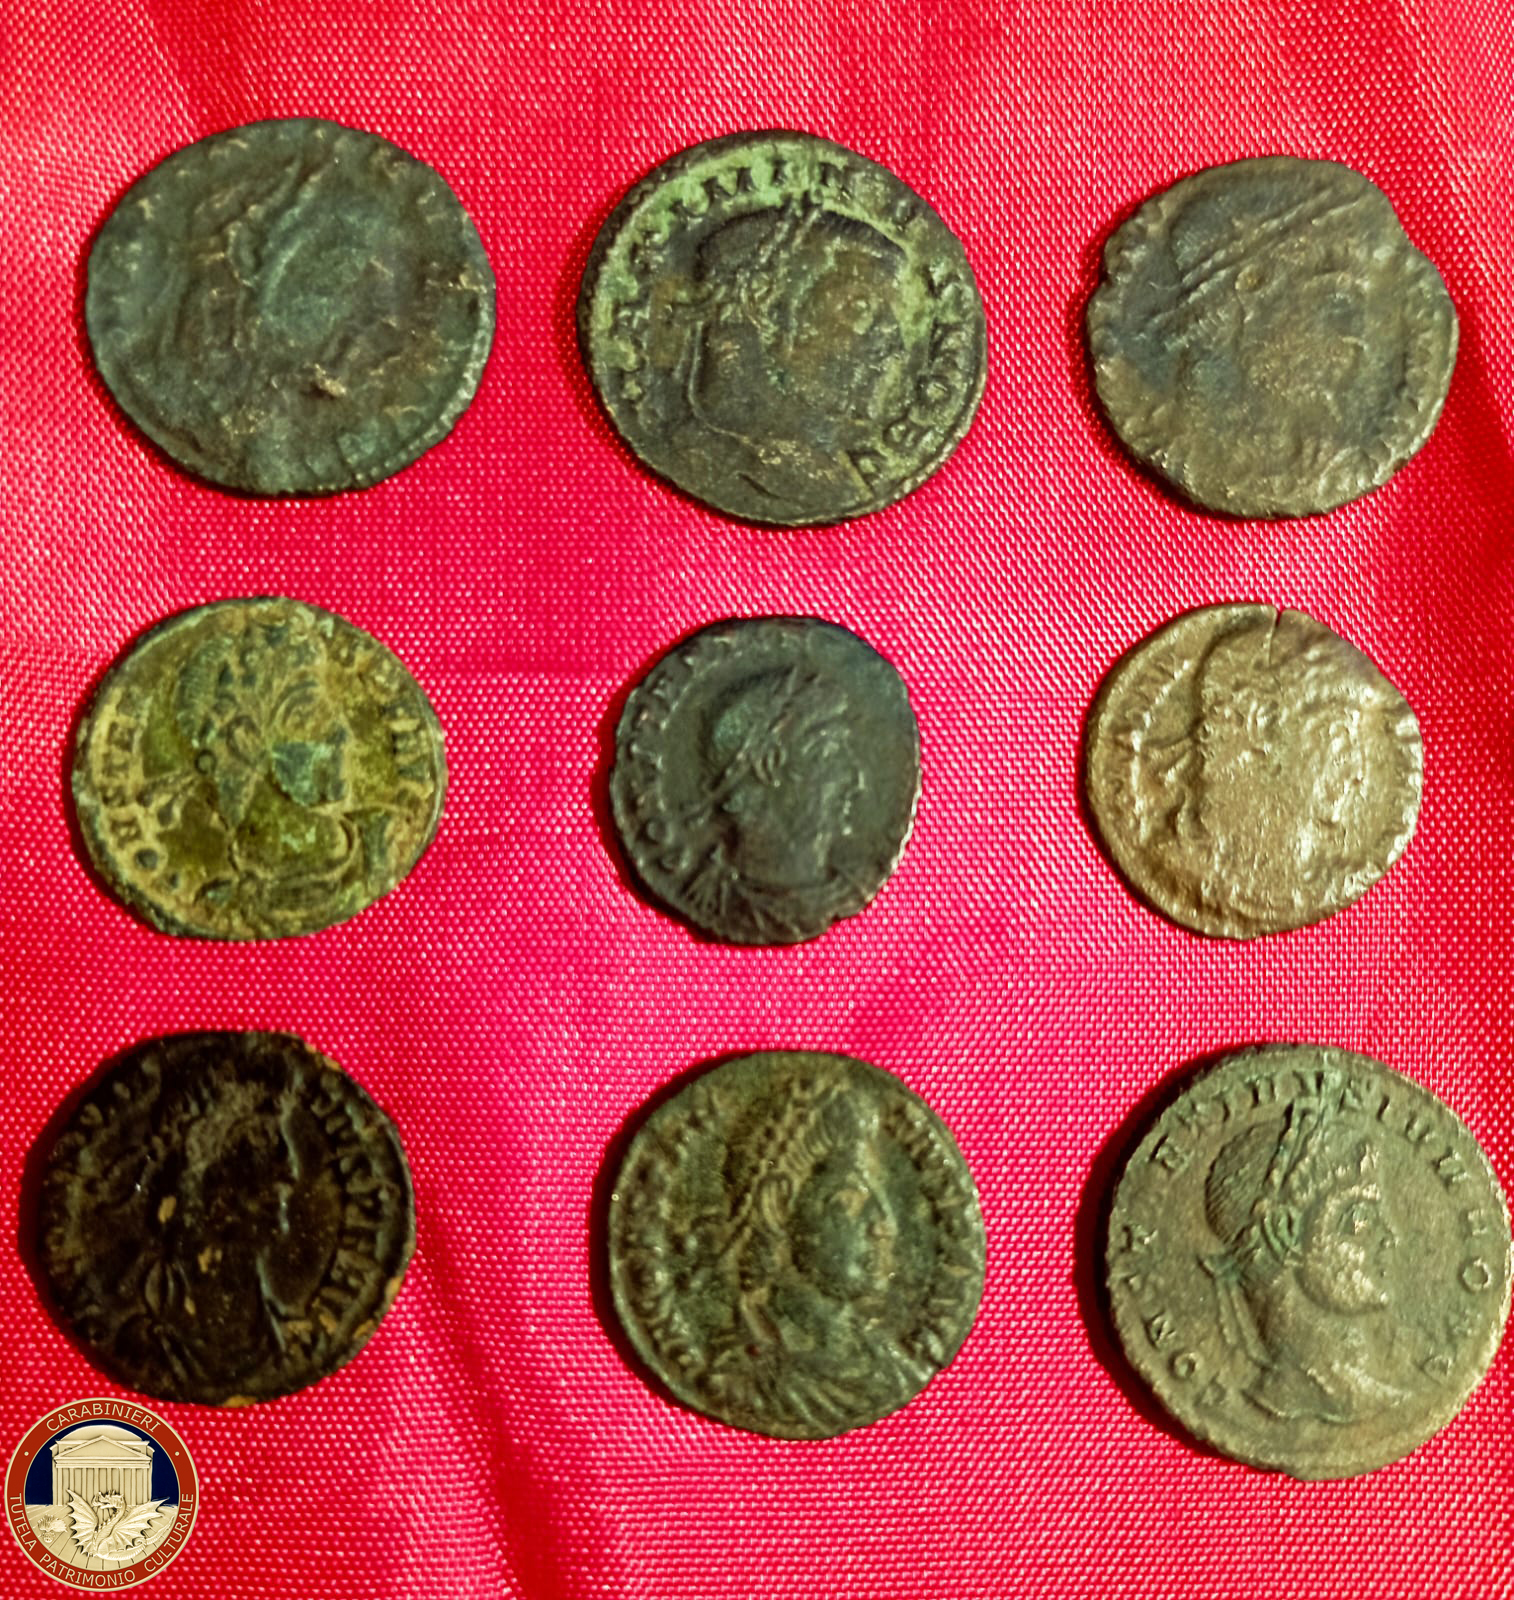 Carabinieri restituiscono nove monete di epoca romana alla Croazia